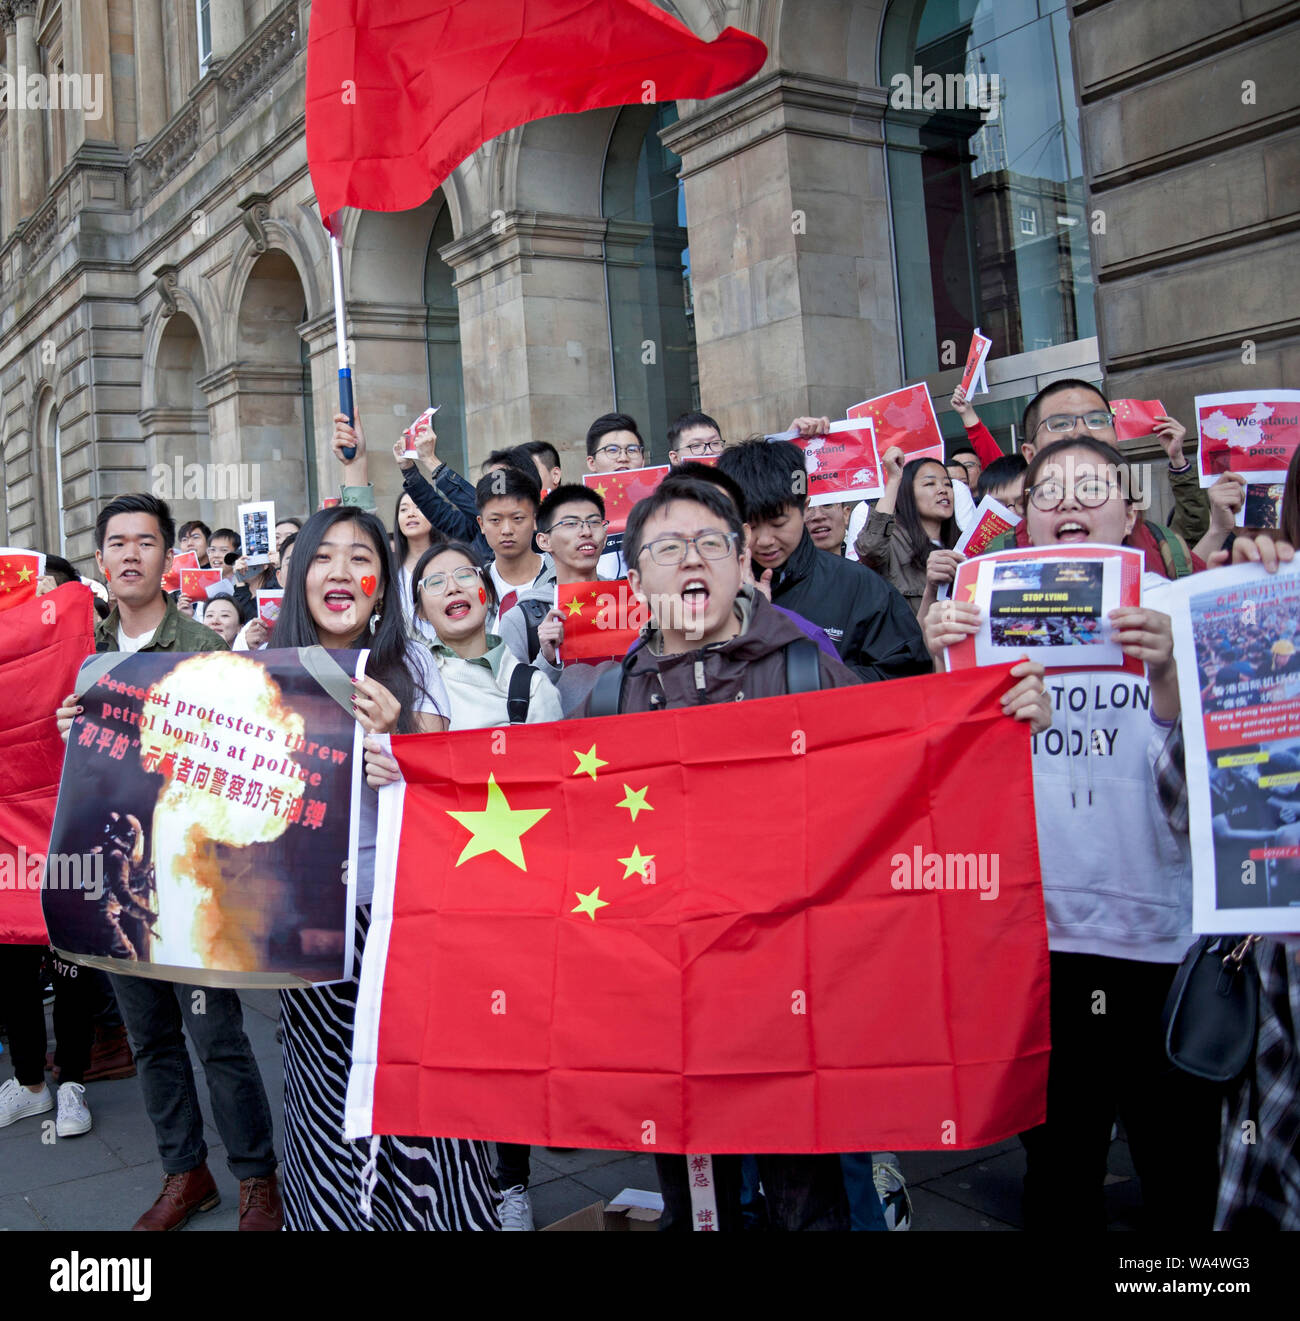 Edinburgh, Ecosse, Royaume-Uni. 17 août 2019. Chinese manifester pacifiquement dans le centre-ville avec des affiches anciennes 'ce qui s'est passé le 11/8 à Hong Kong". "Les agents de police sont gravement blessés par la bombe de l'essence a tiré d'émeutiers." Banque D'Images